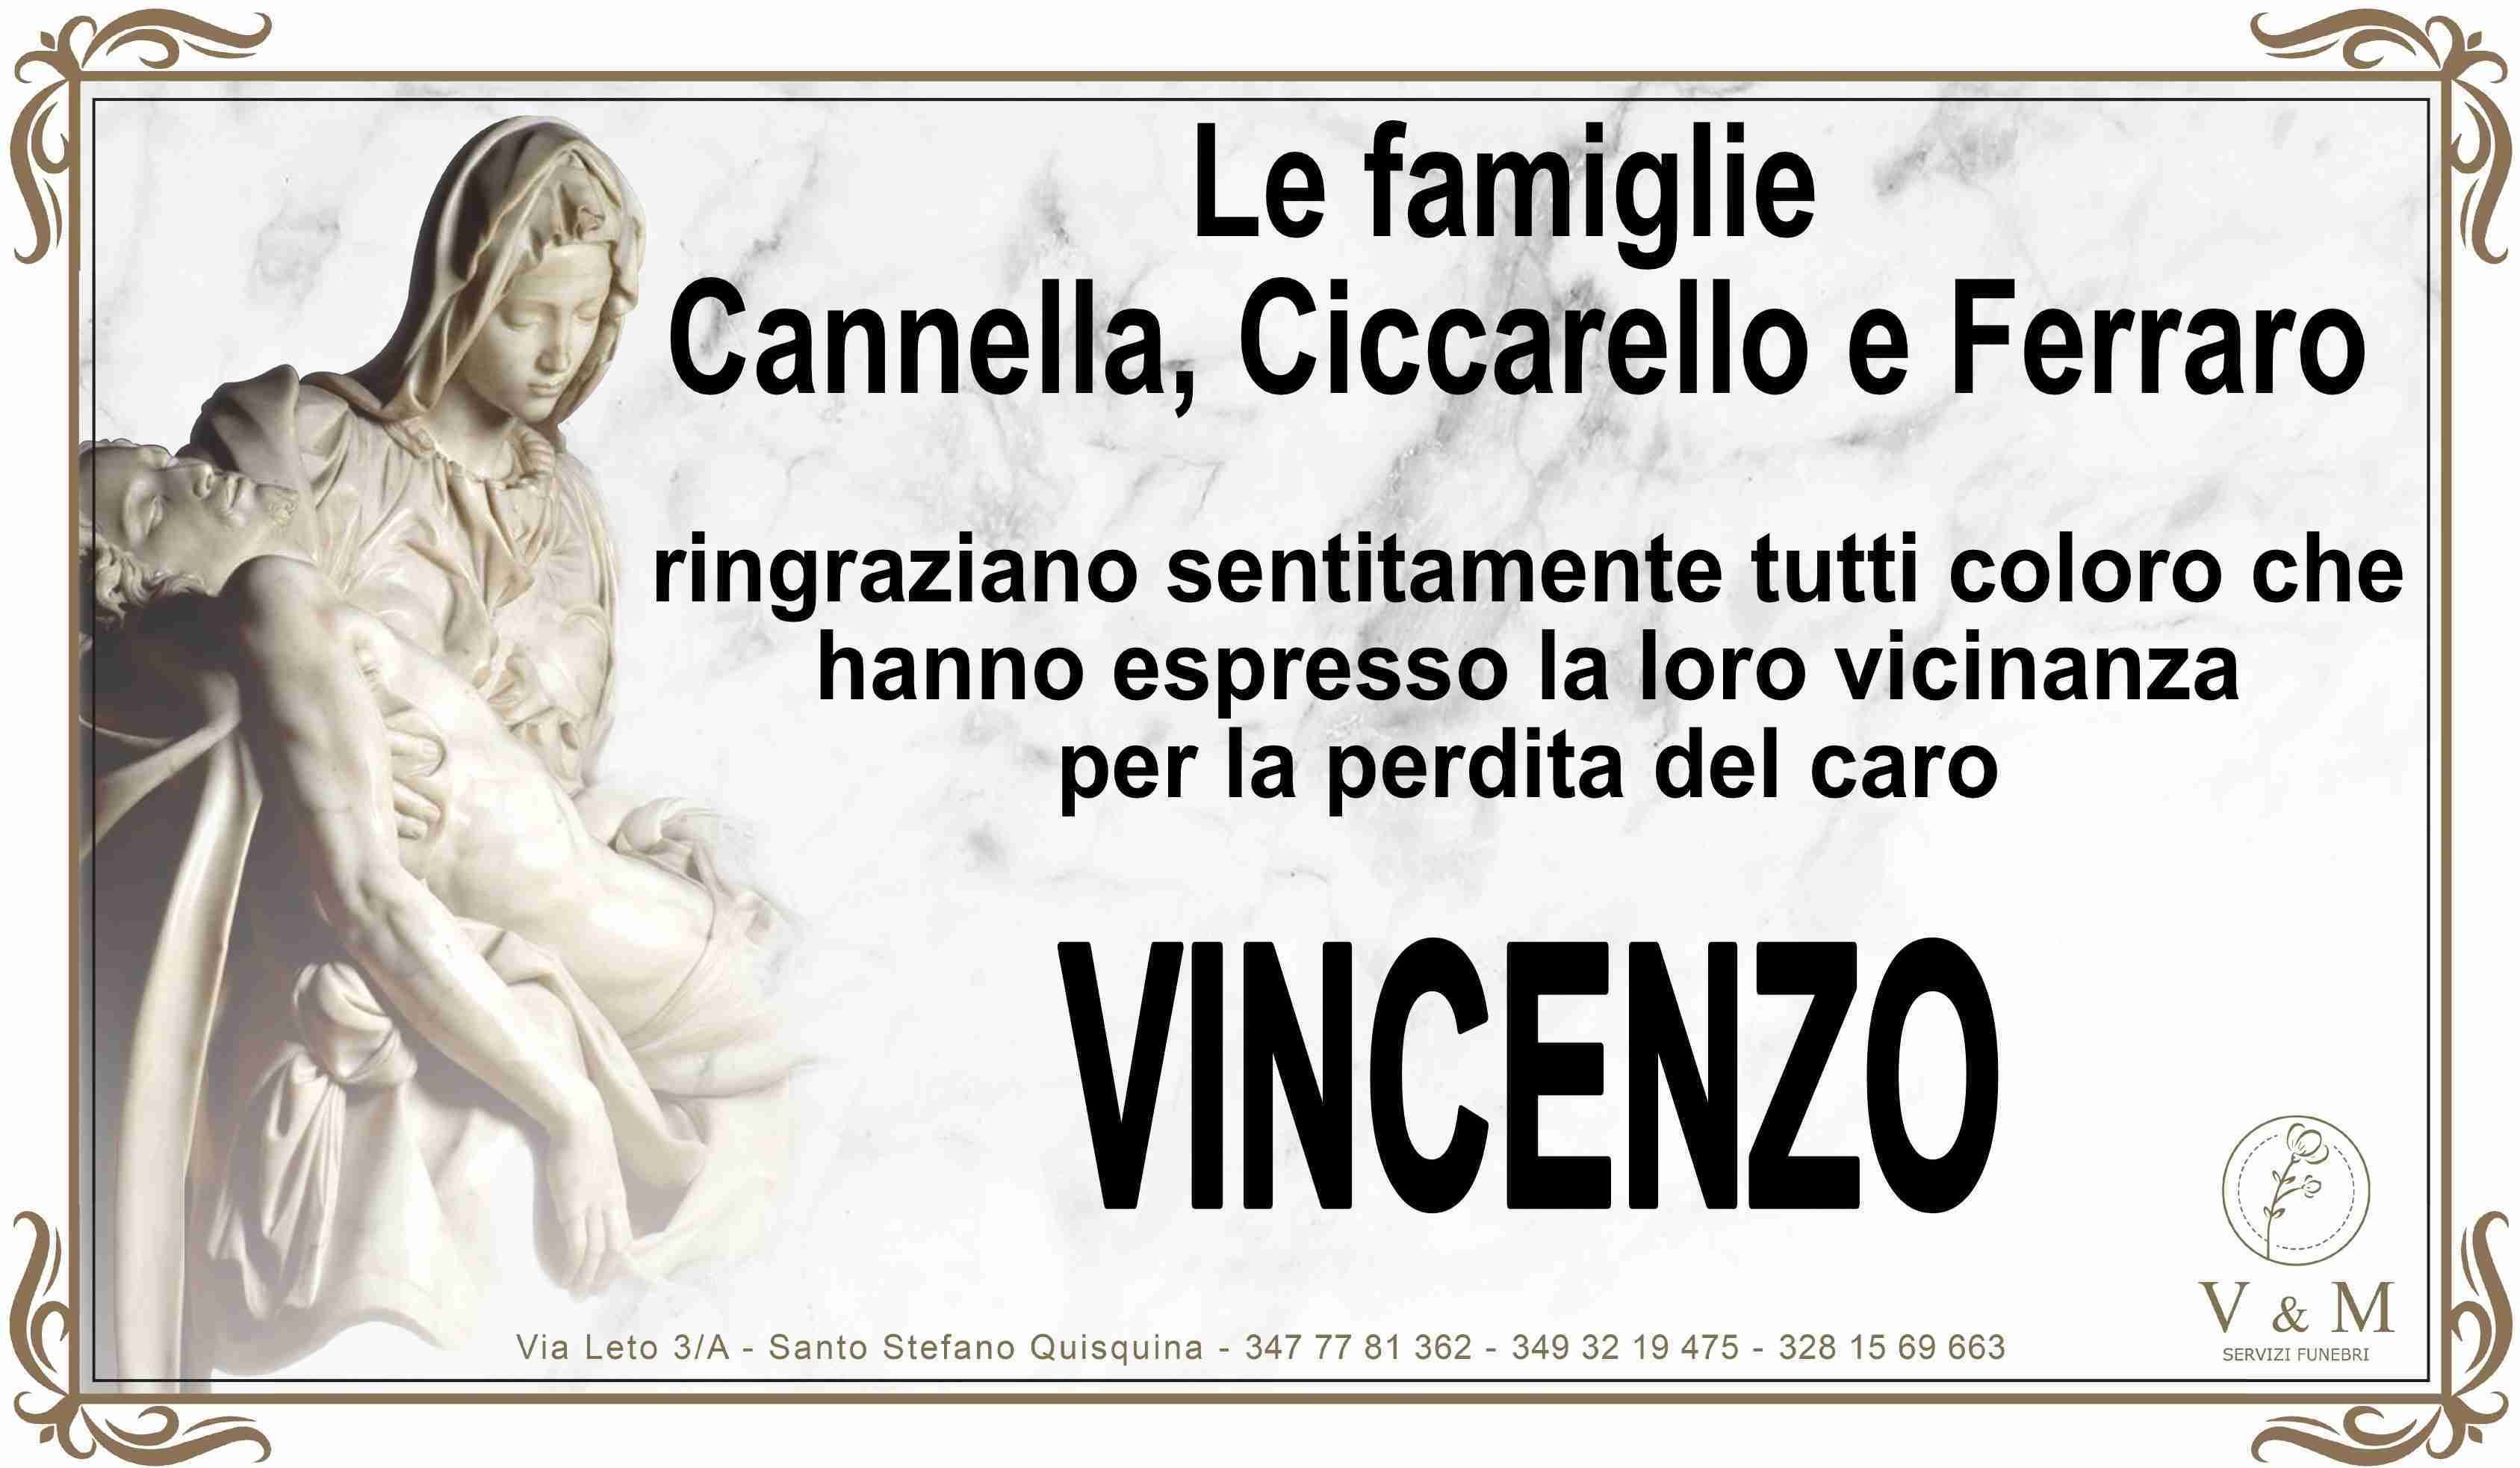 Vincenzo Cannella